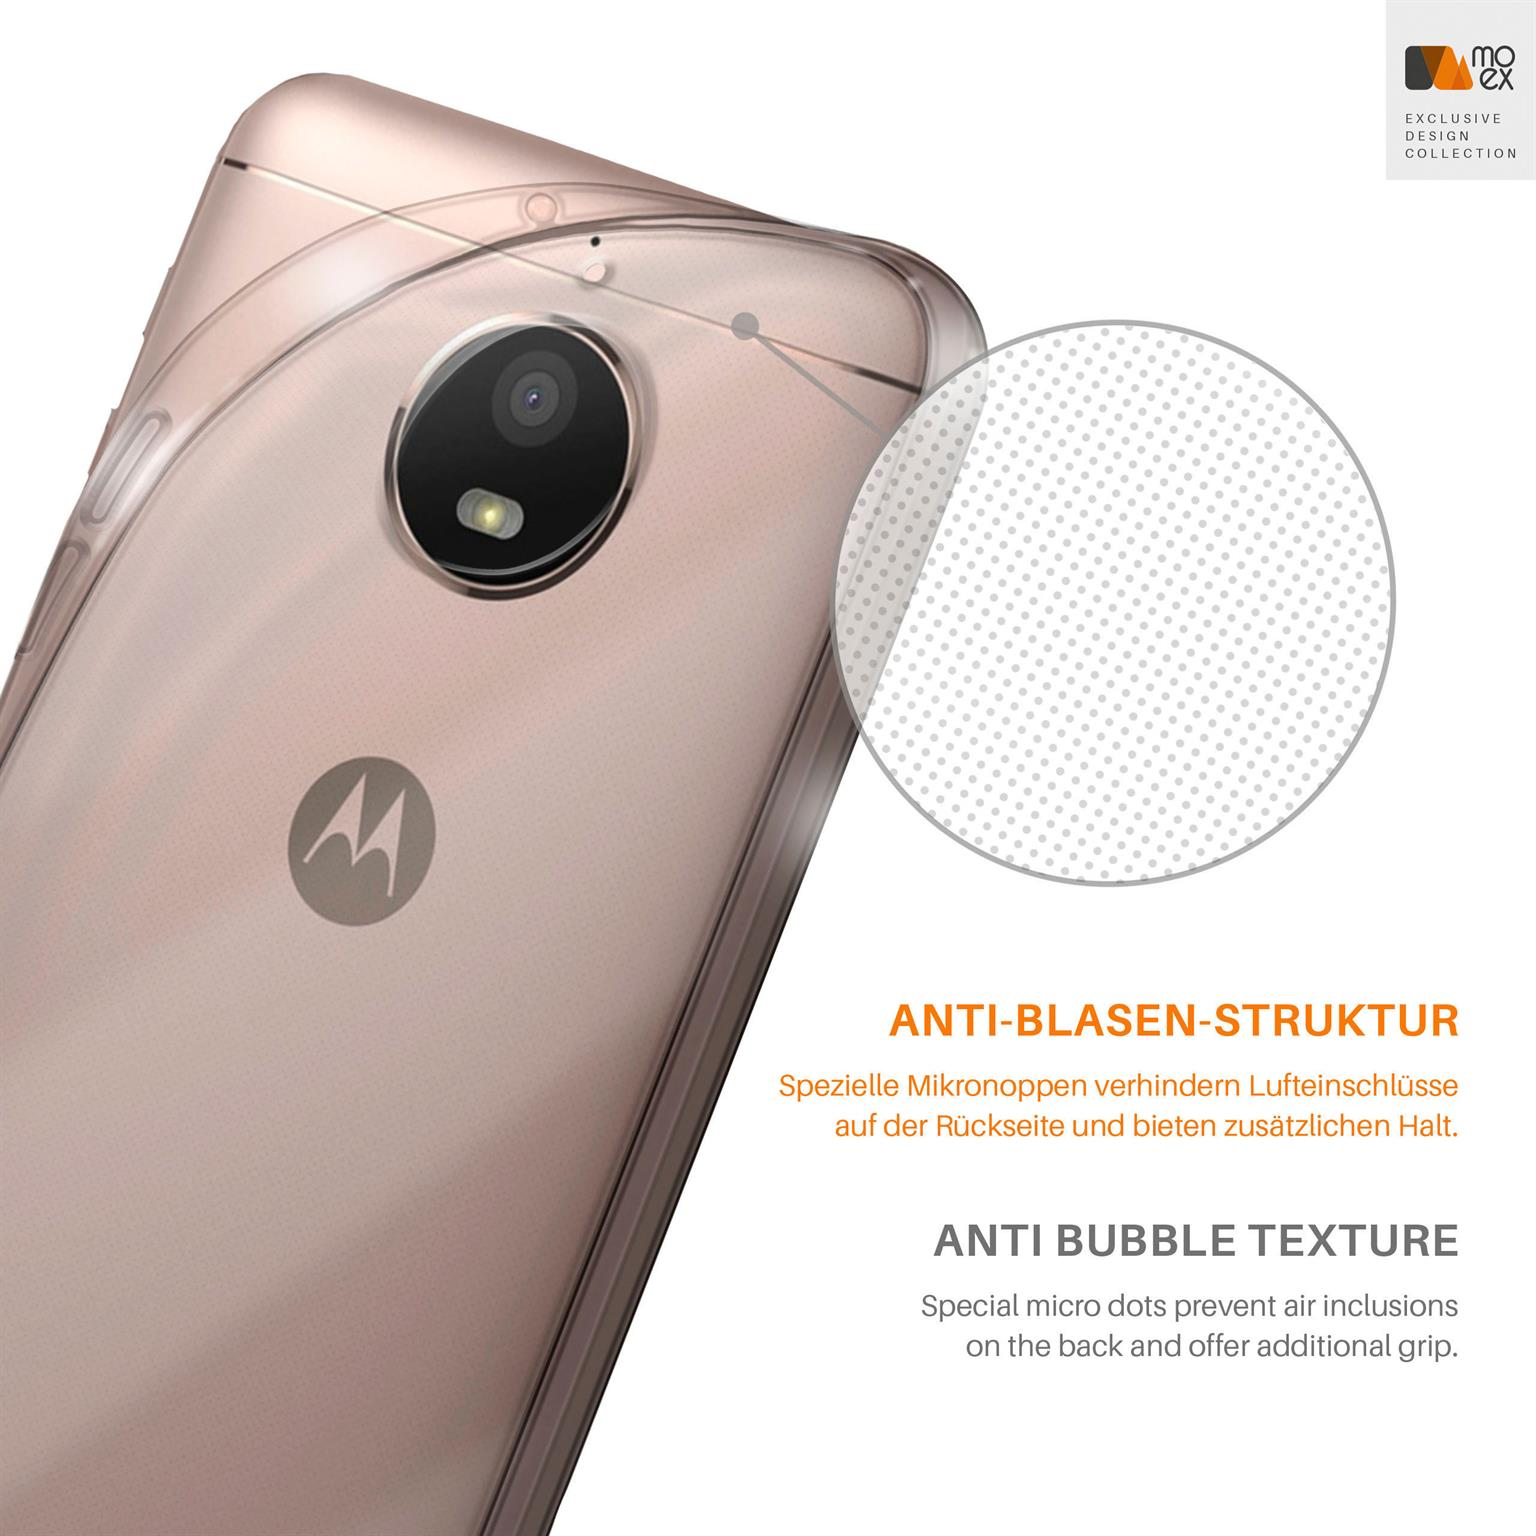 Crystal-Clear Motorola, Moto MOEX E4, Aero Case, Backcover,